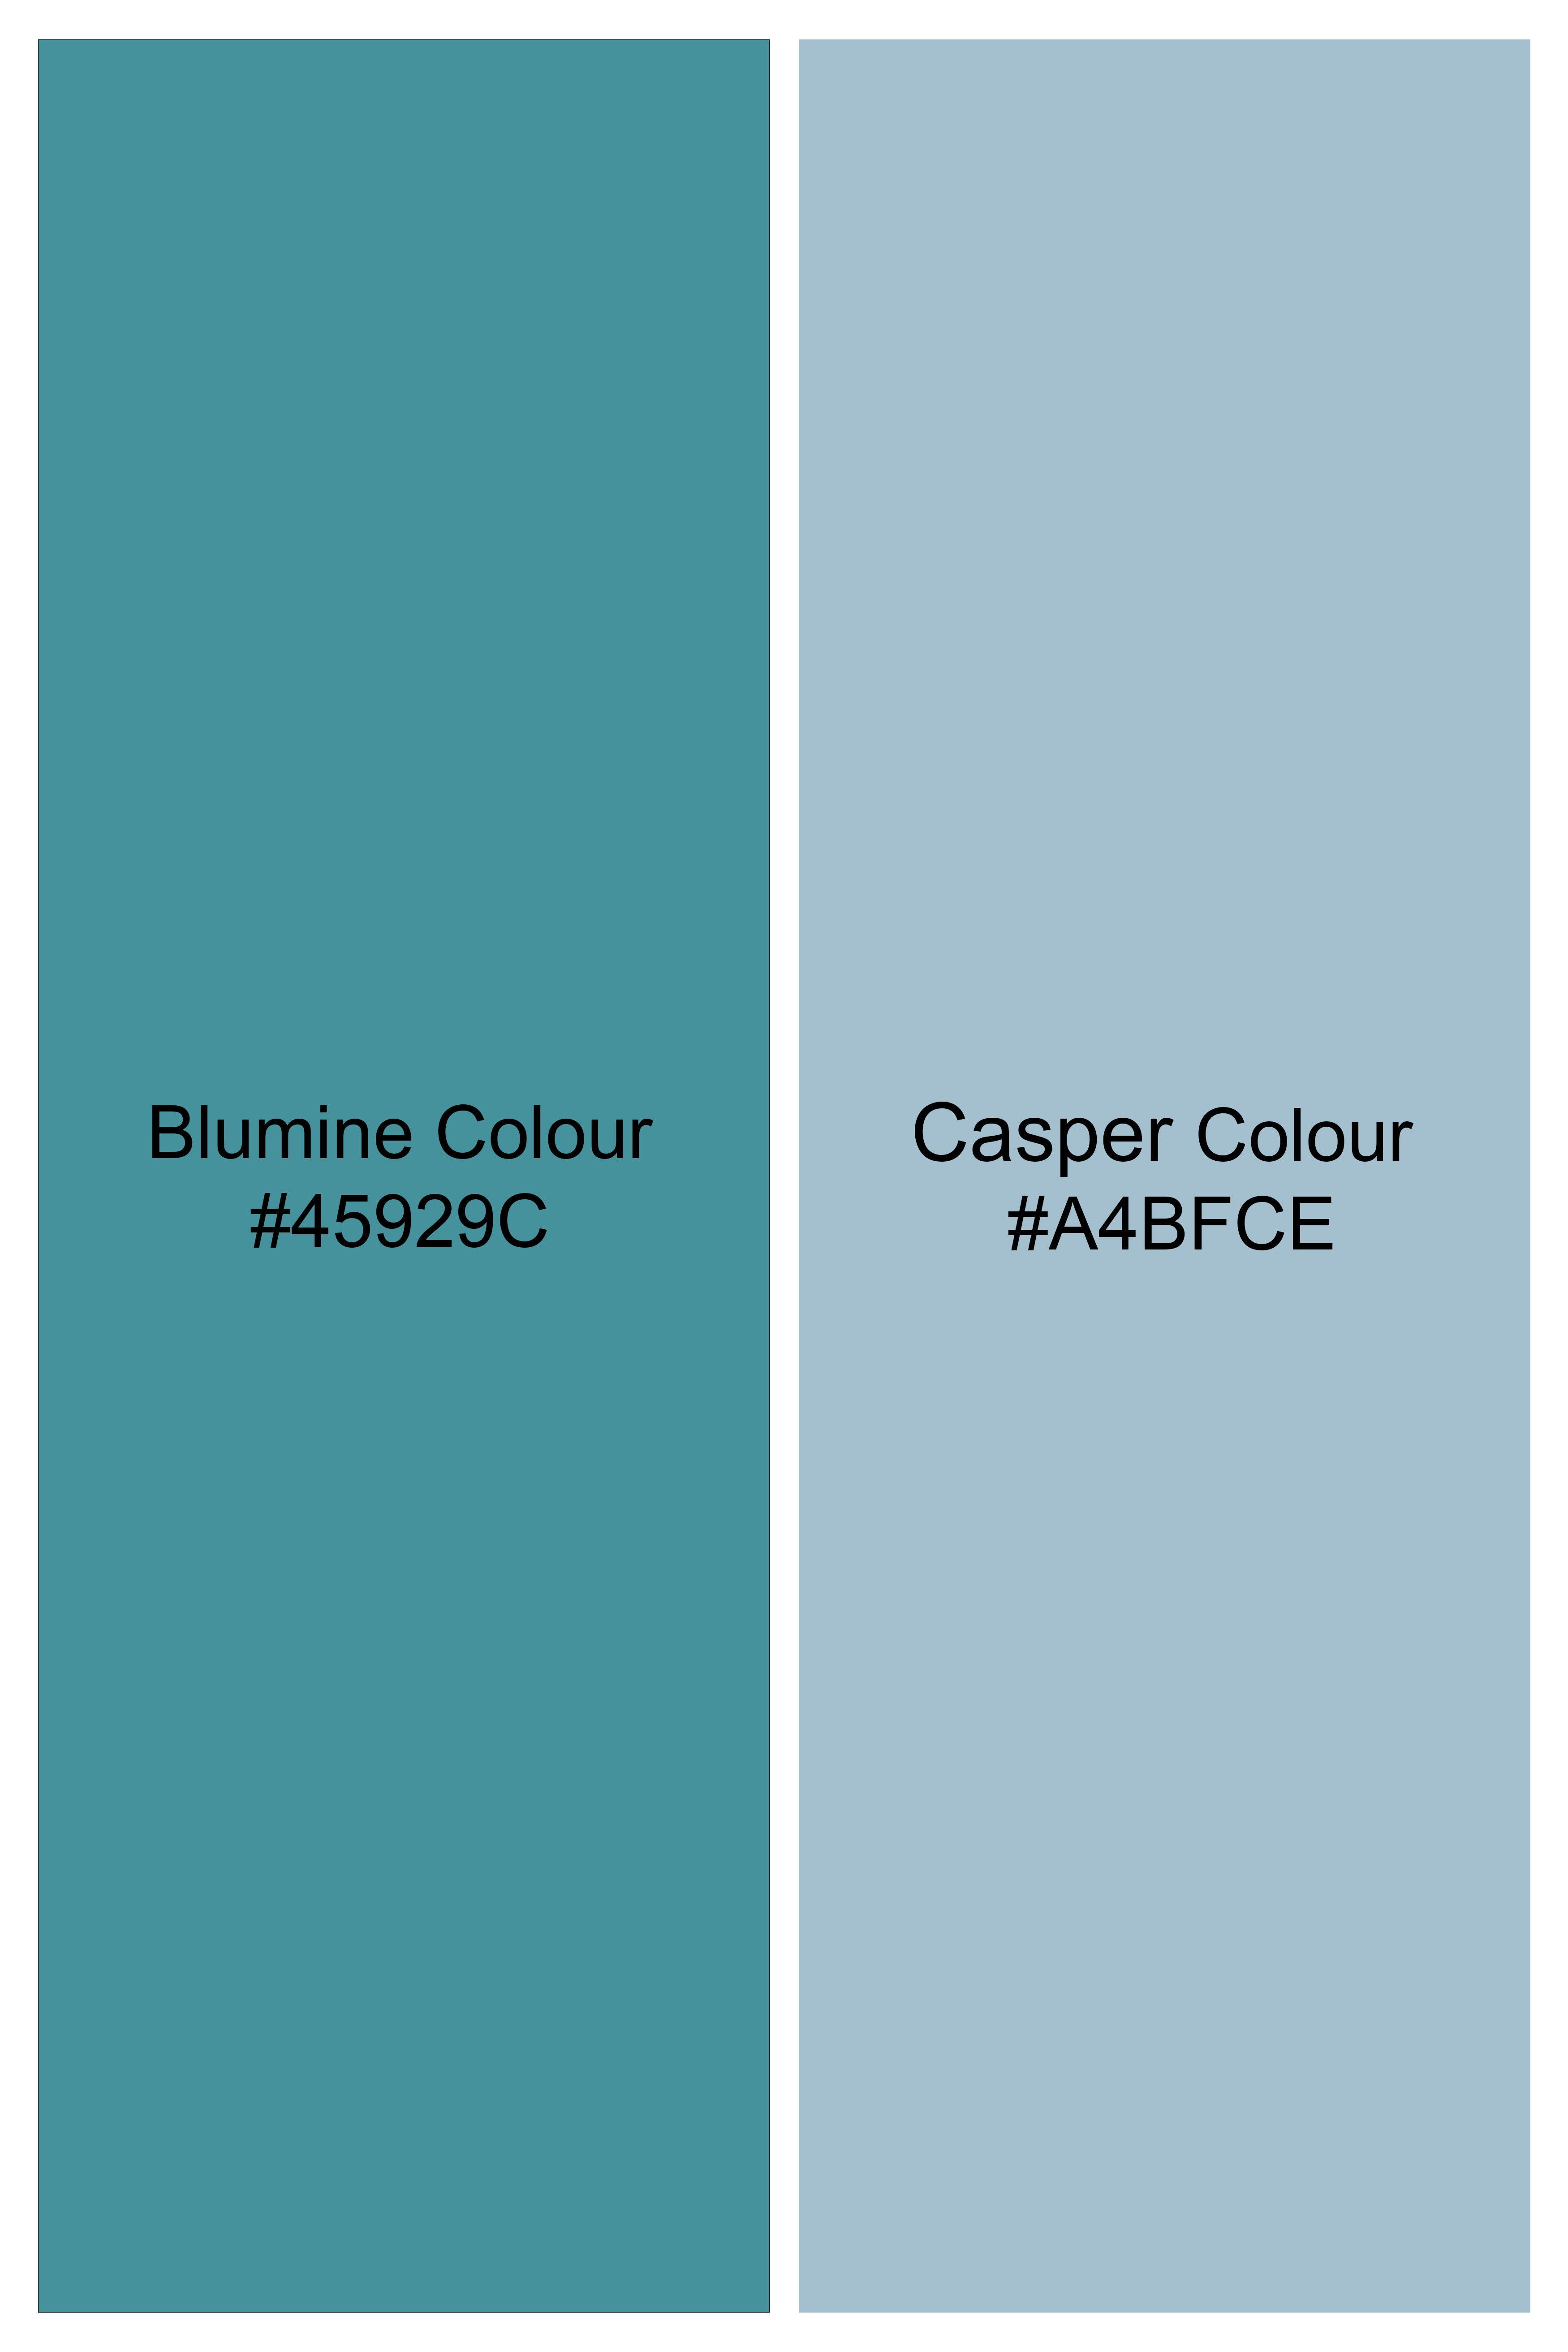 Blumine with Casper Gray Quirky Printed Super Soft Premium Cotton Shorts SR285-28, SR285-30, SR285-32, SR285-34, SR285-36, SR285-38, SR285-40, SR285-42, SR285-44